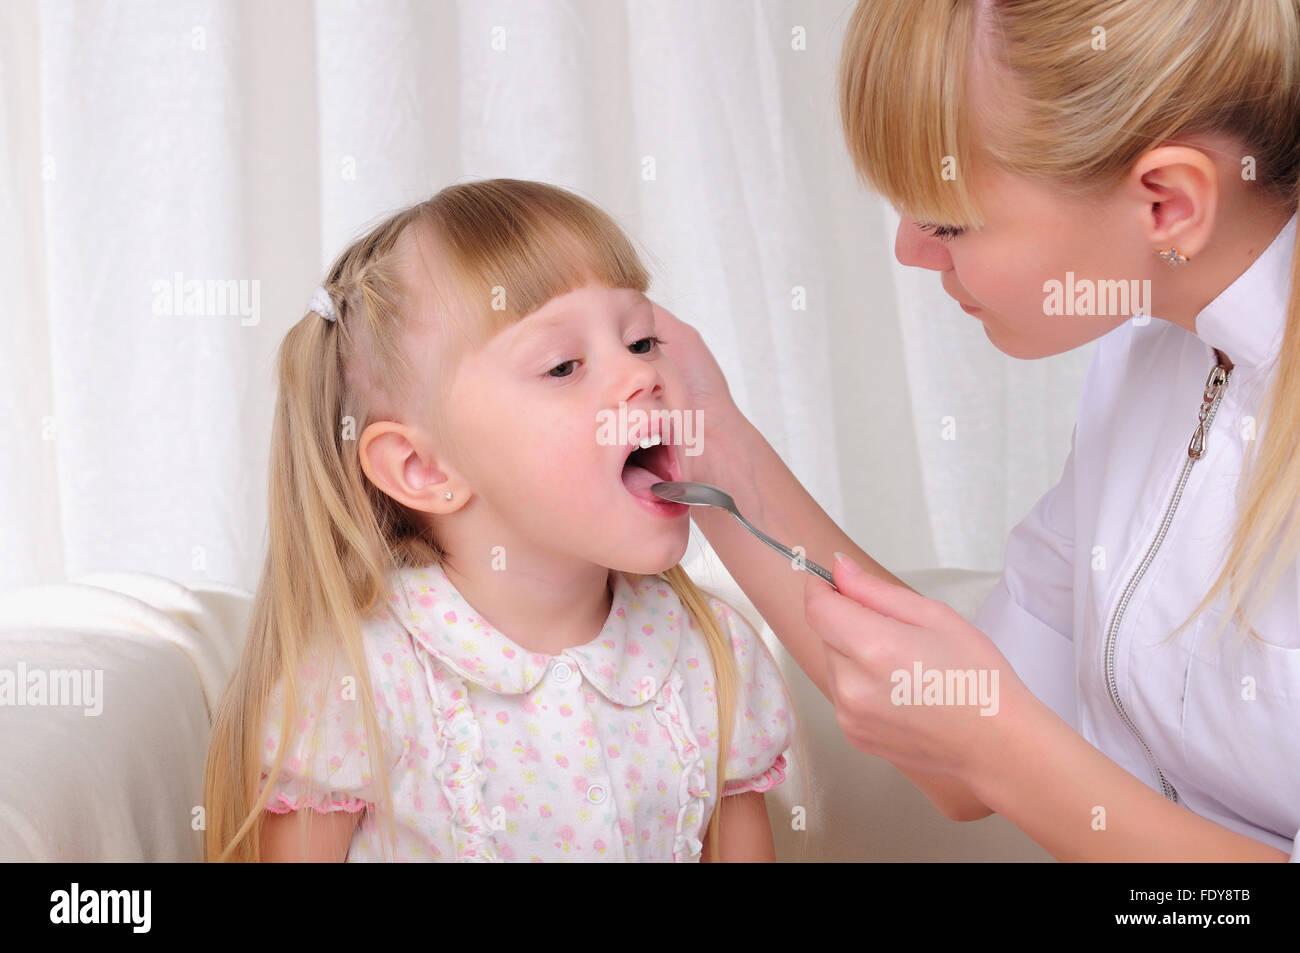 Little throat. Осмотр горла у ребенка. Врач осматривает горло ребенка. Заболевания рта и глотки у детей.